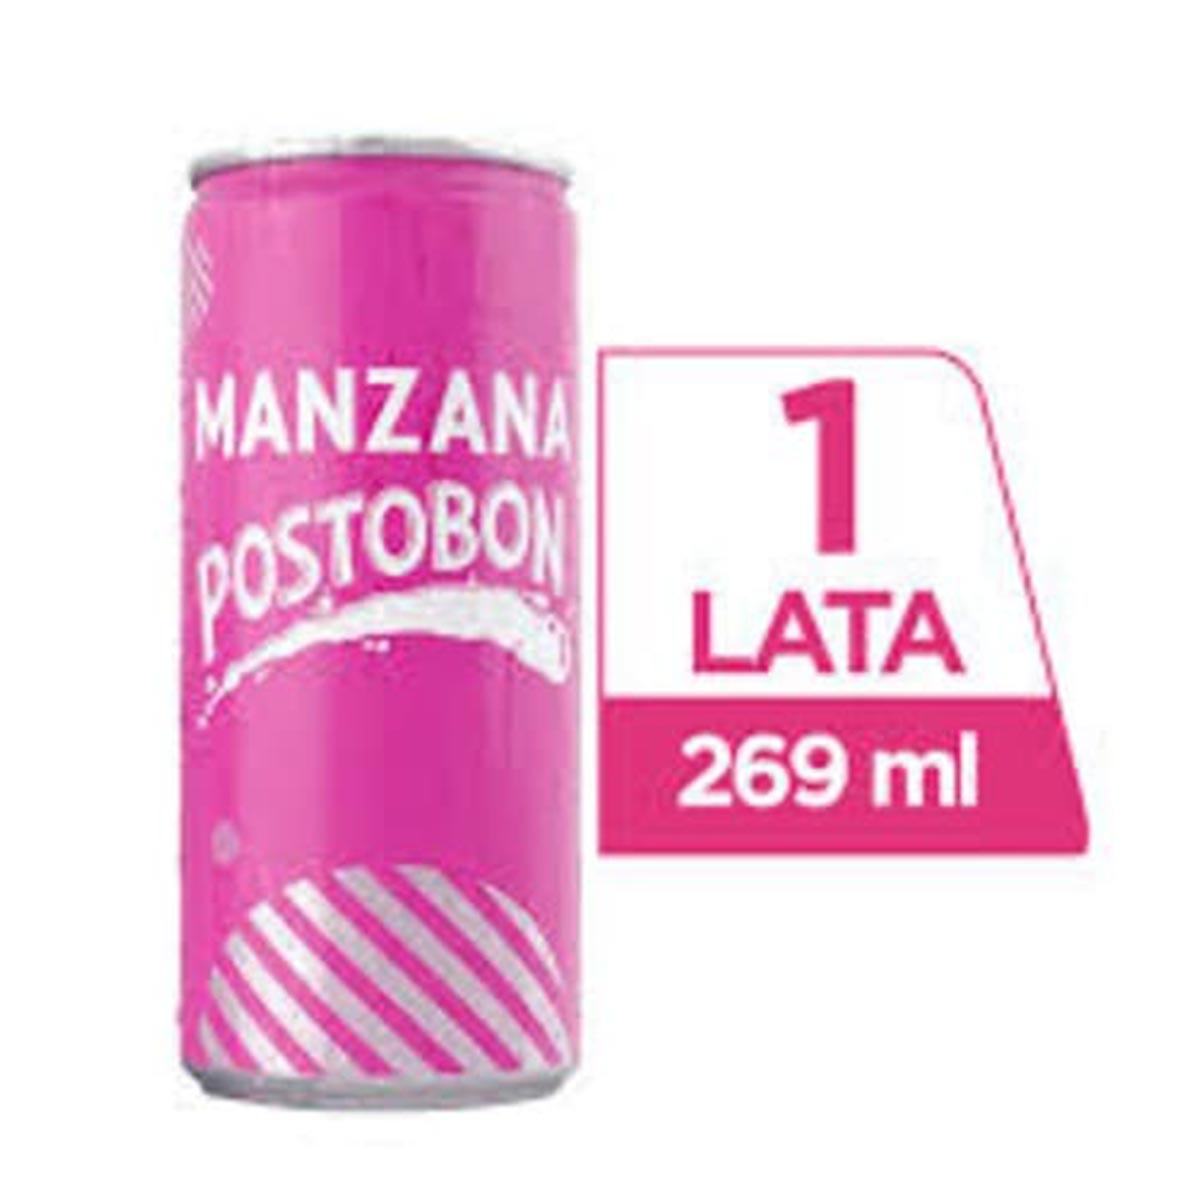 Manzana Postobon 269ml